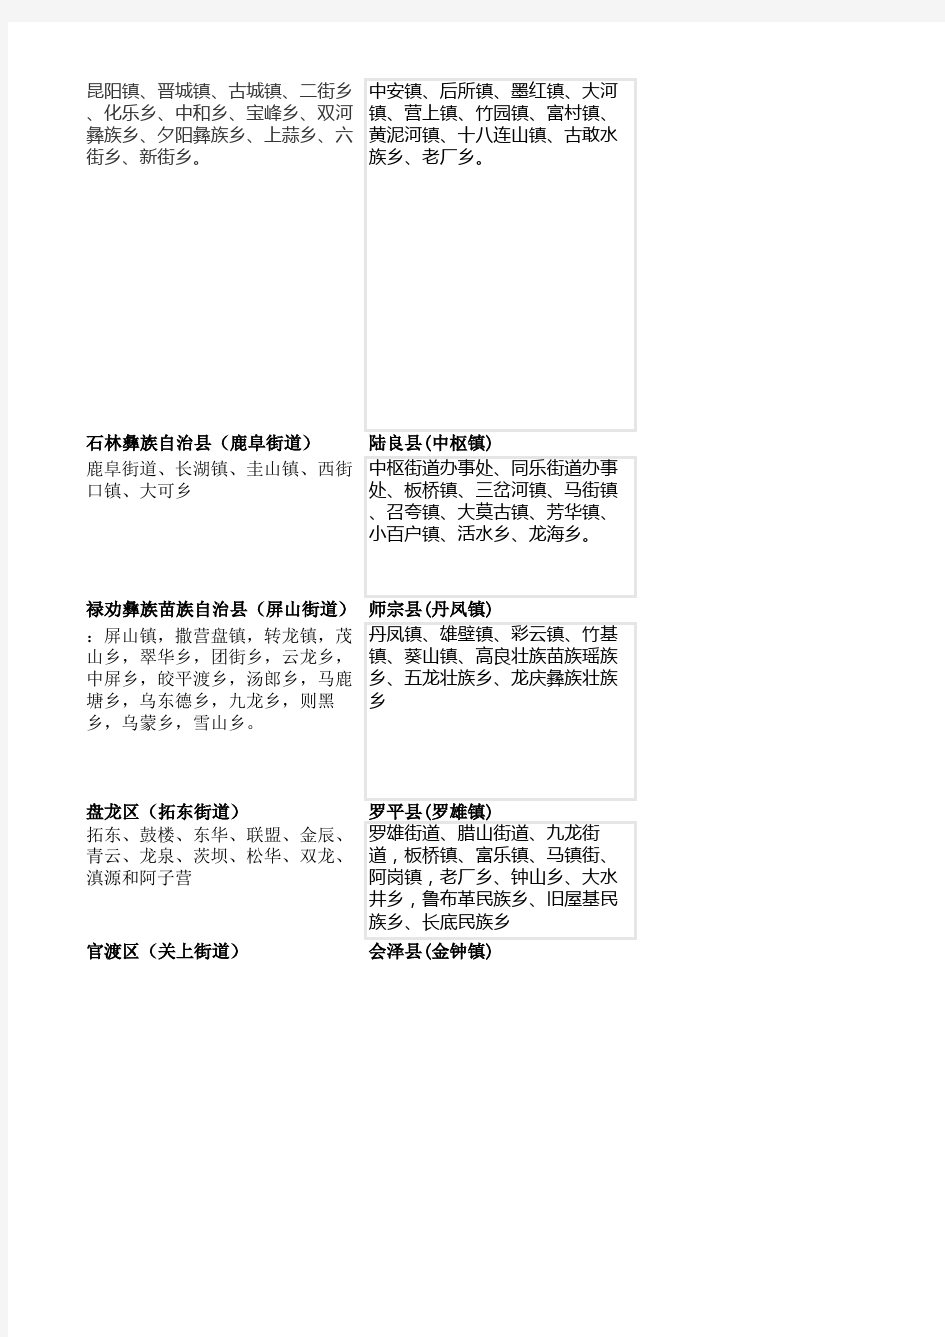 云南省行政区域划分(精确到乡镇)